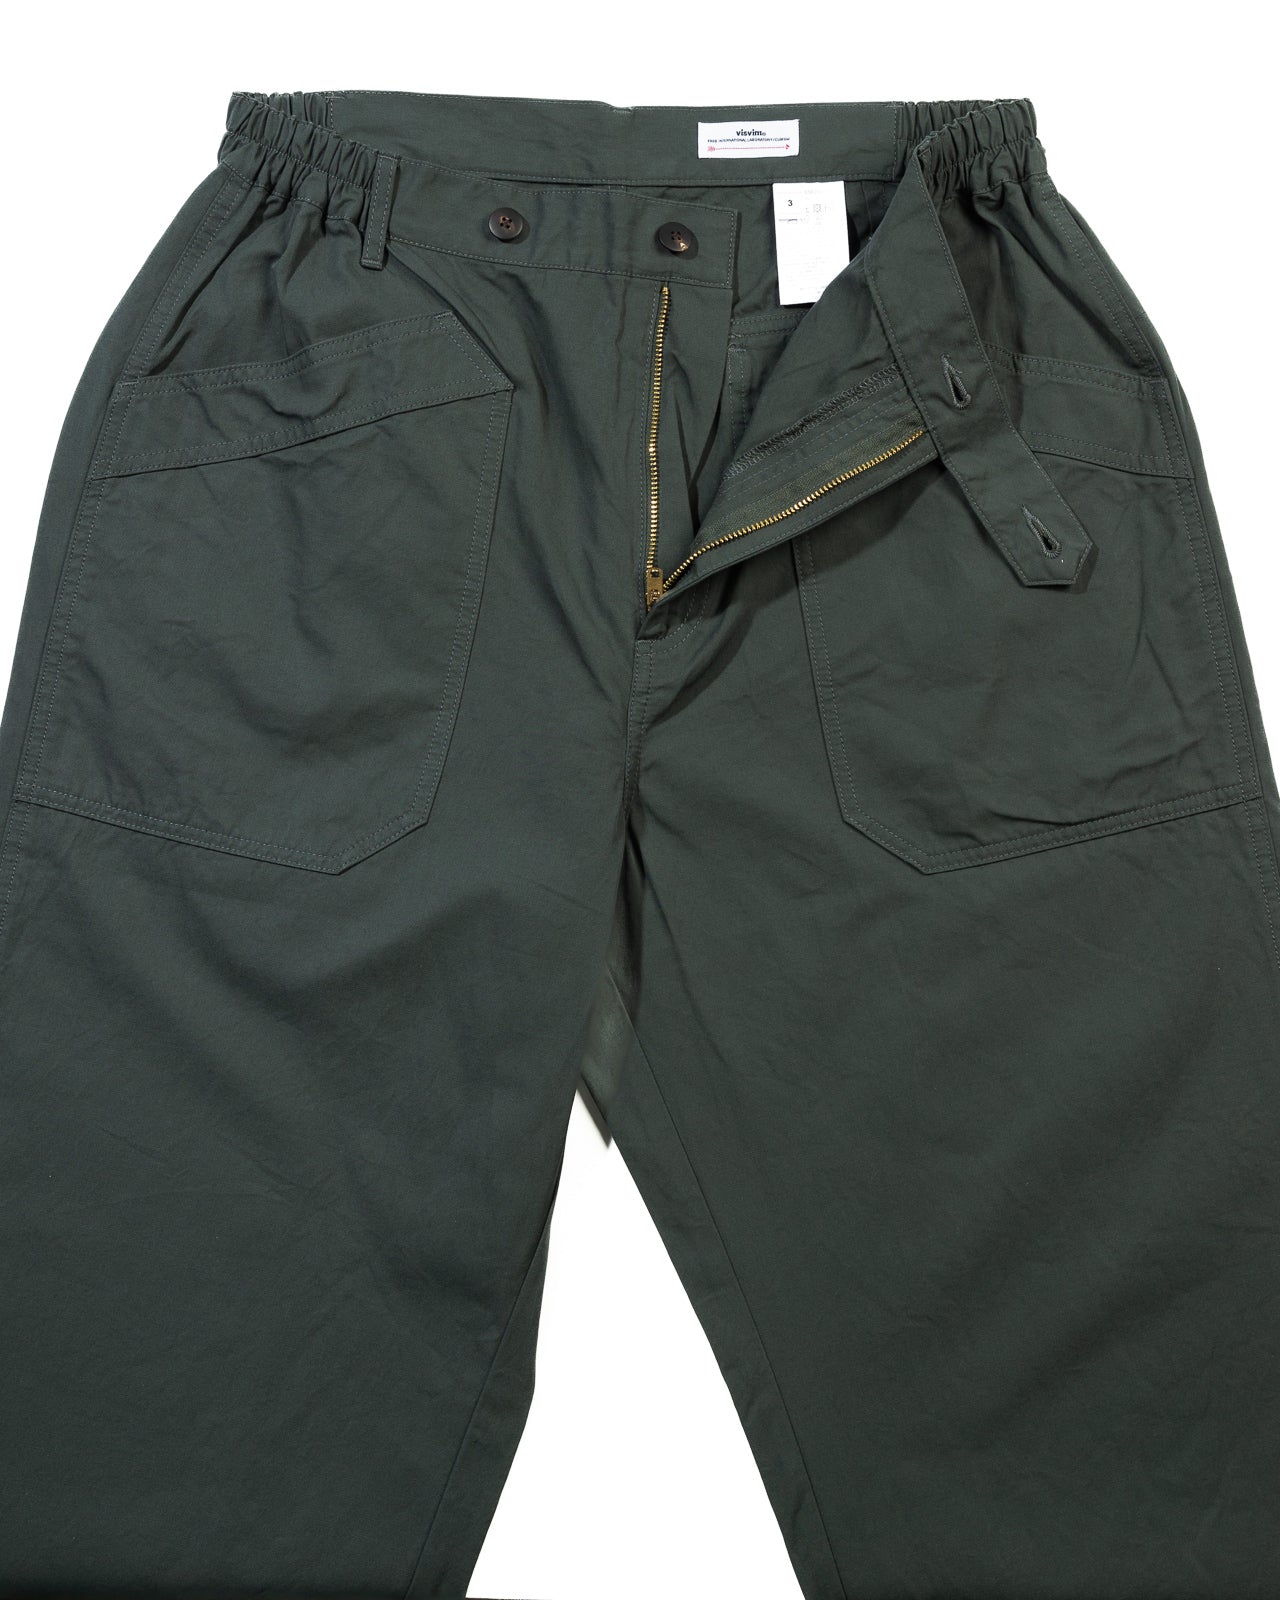 visvim McQueen civilian pants Olive 1 - ワークパンツ/カーゴパンツ